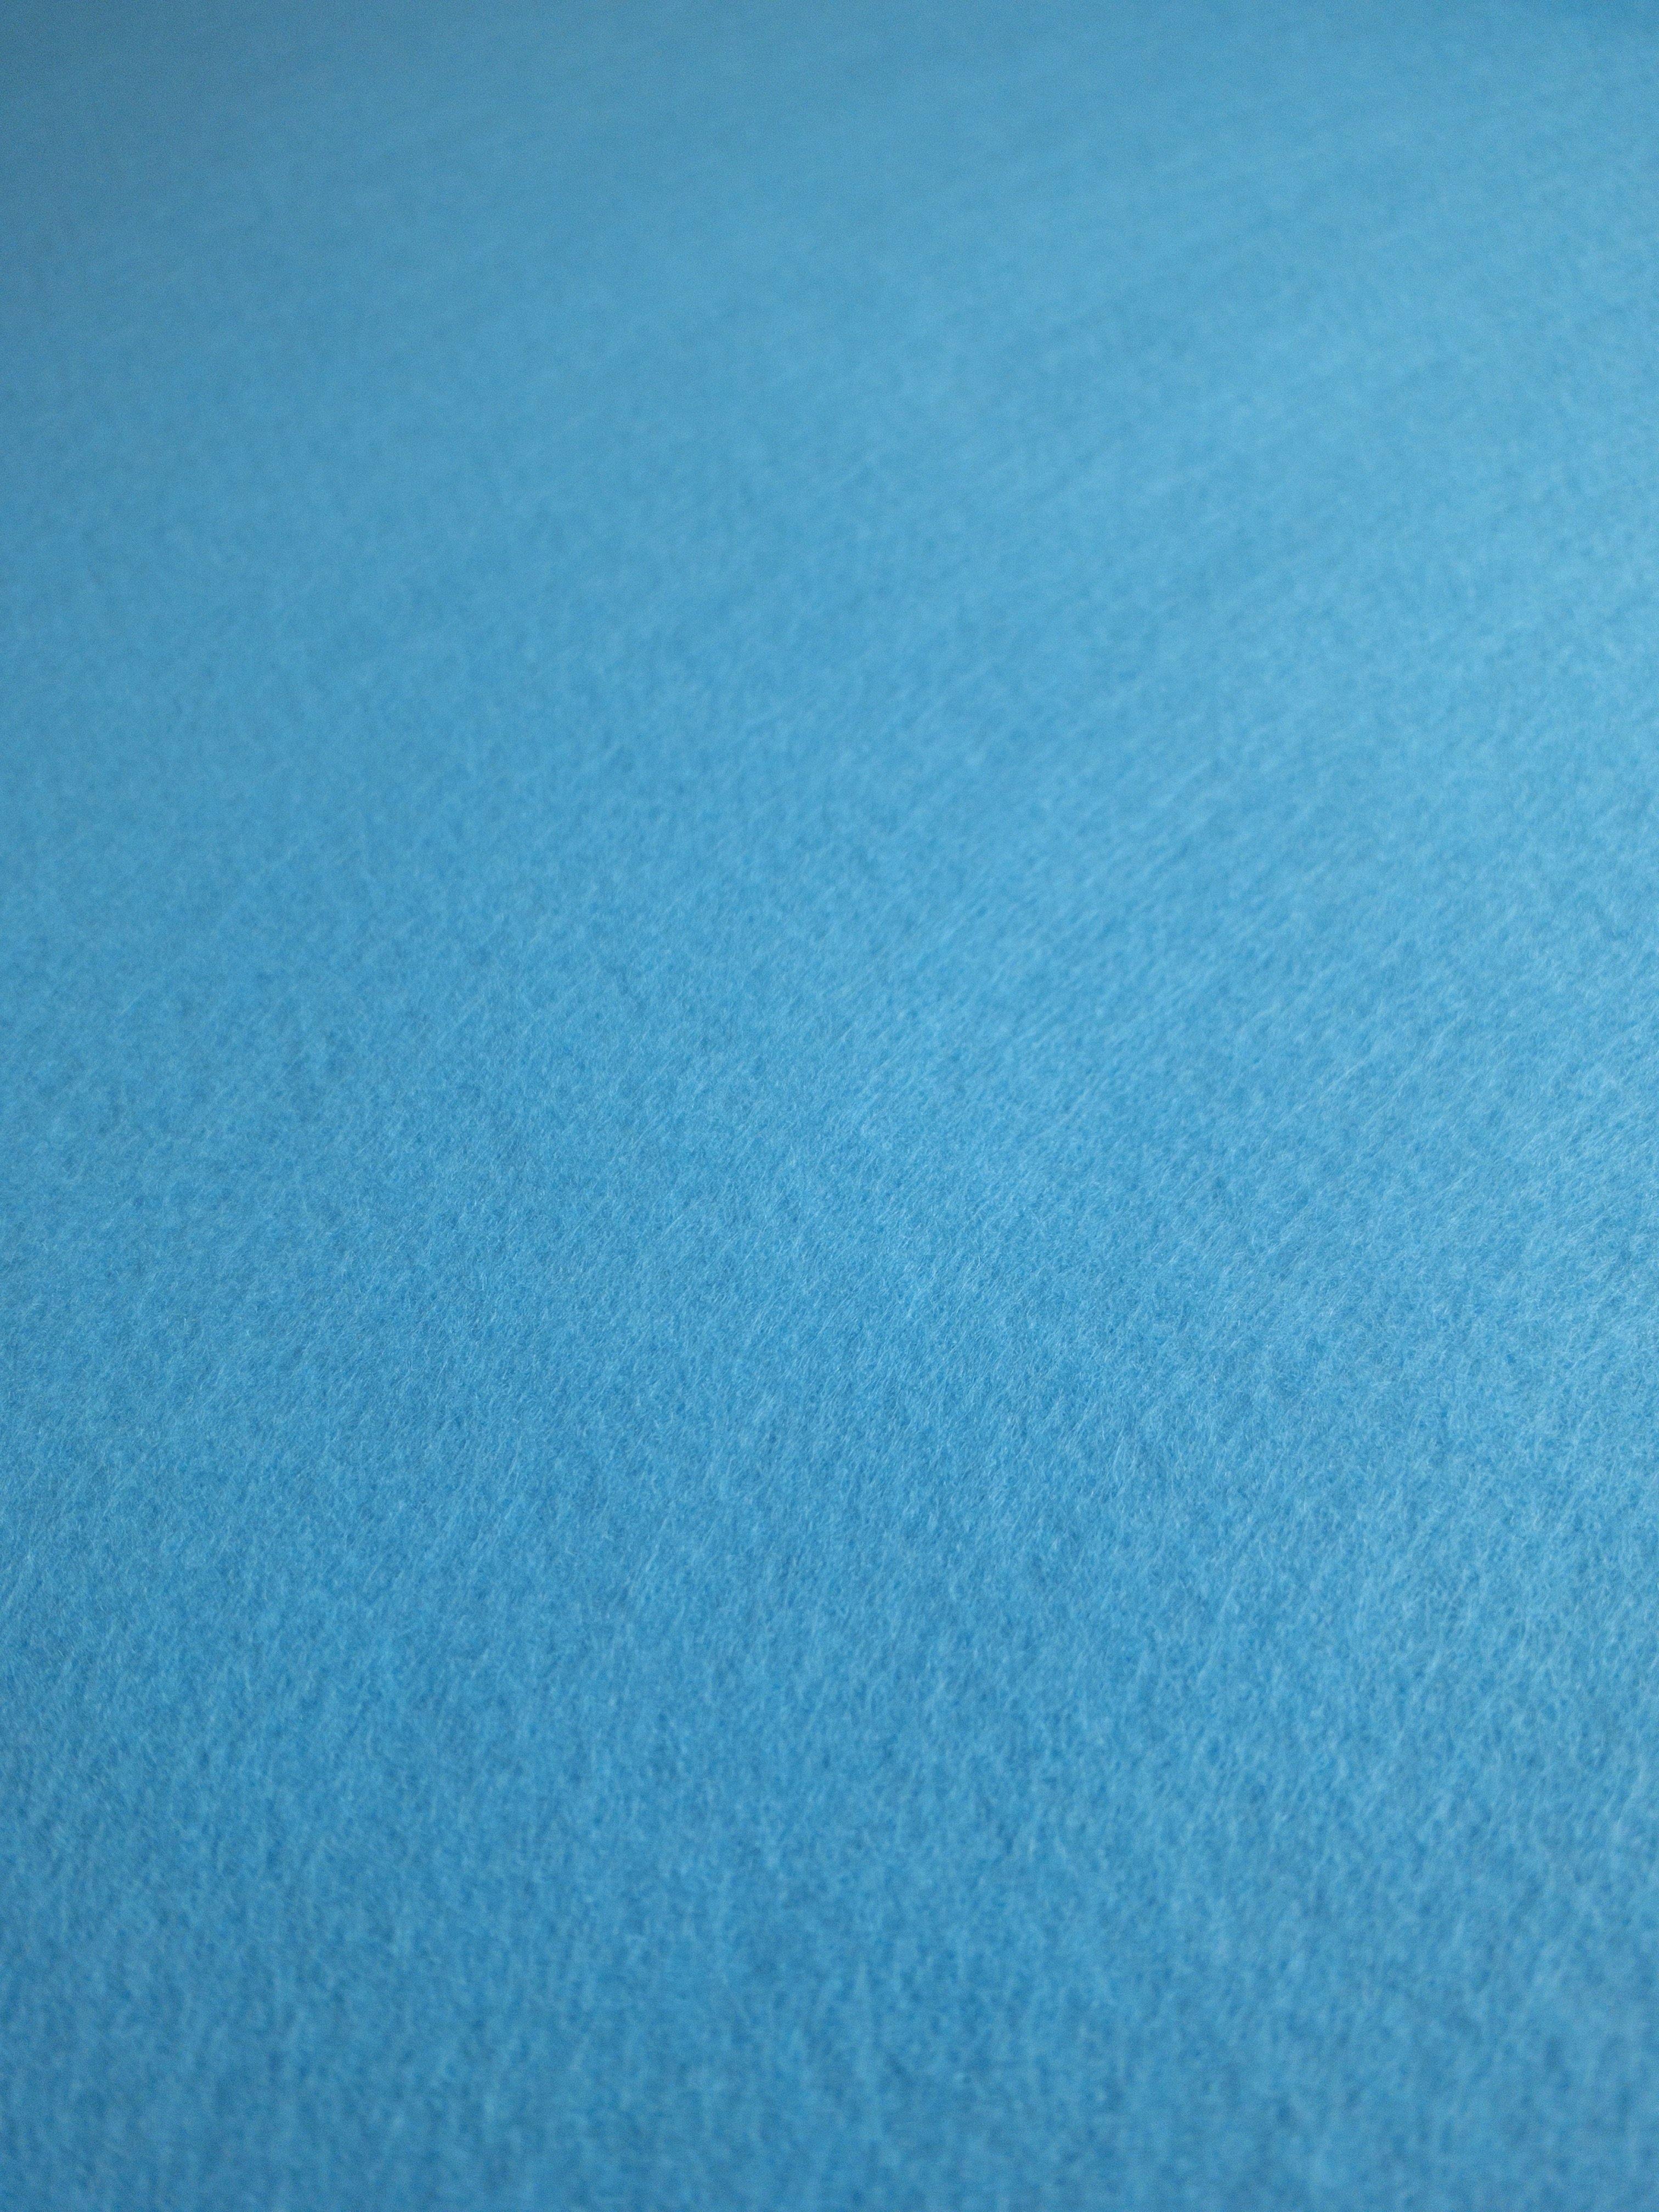 Blue felt fabric. Blue felt texture. Blue blank surface. Photos